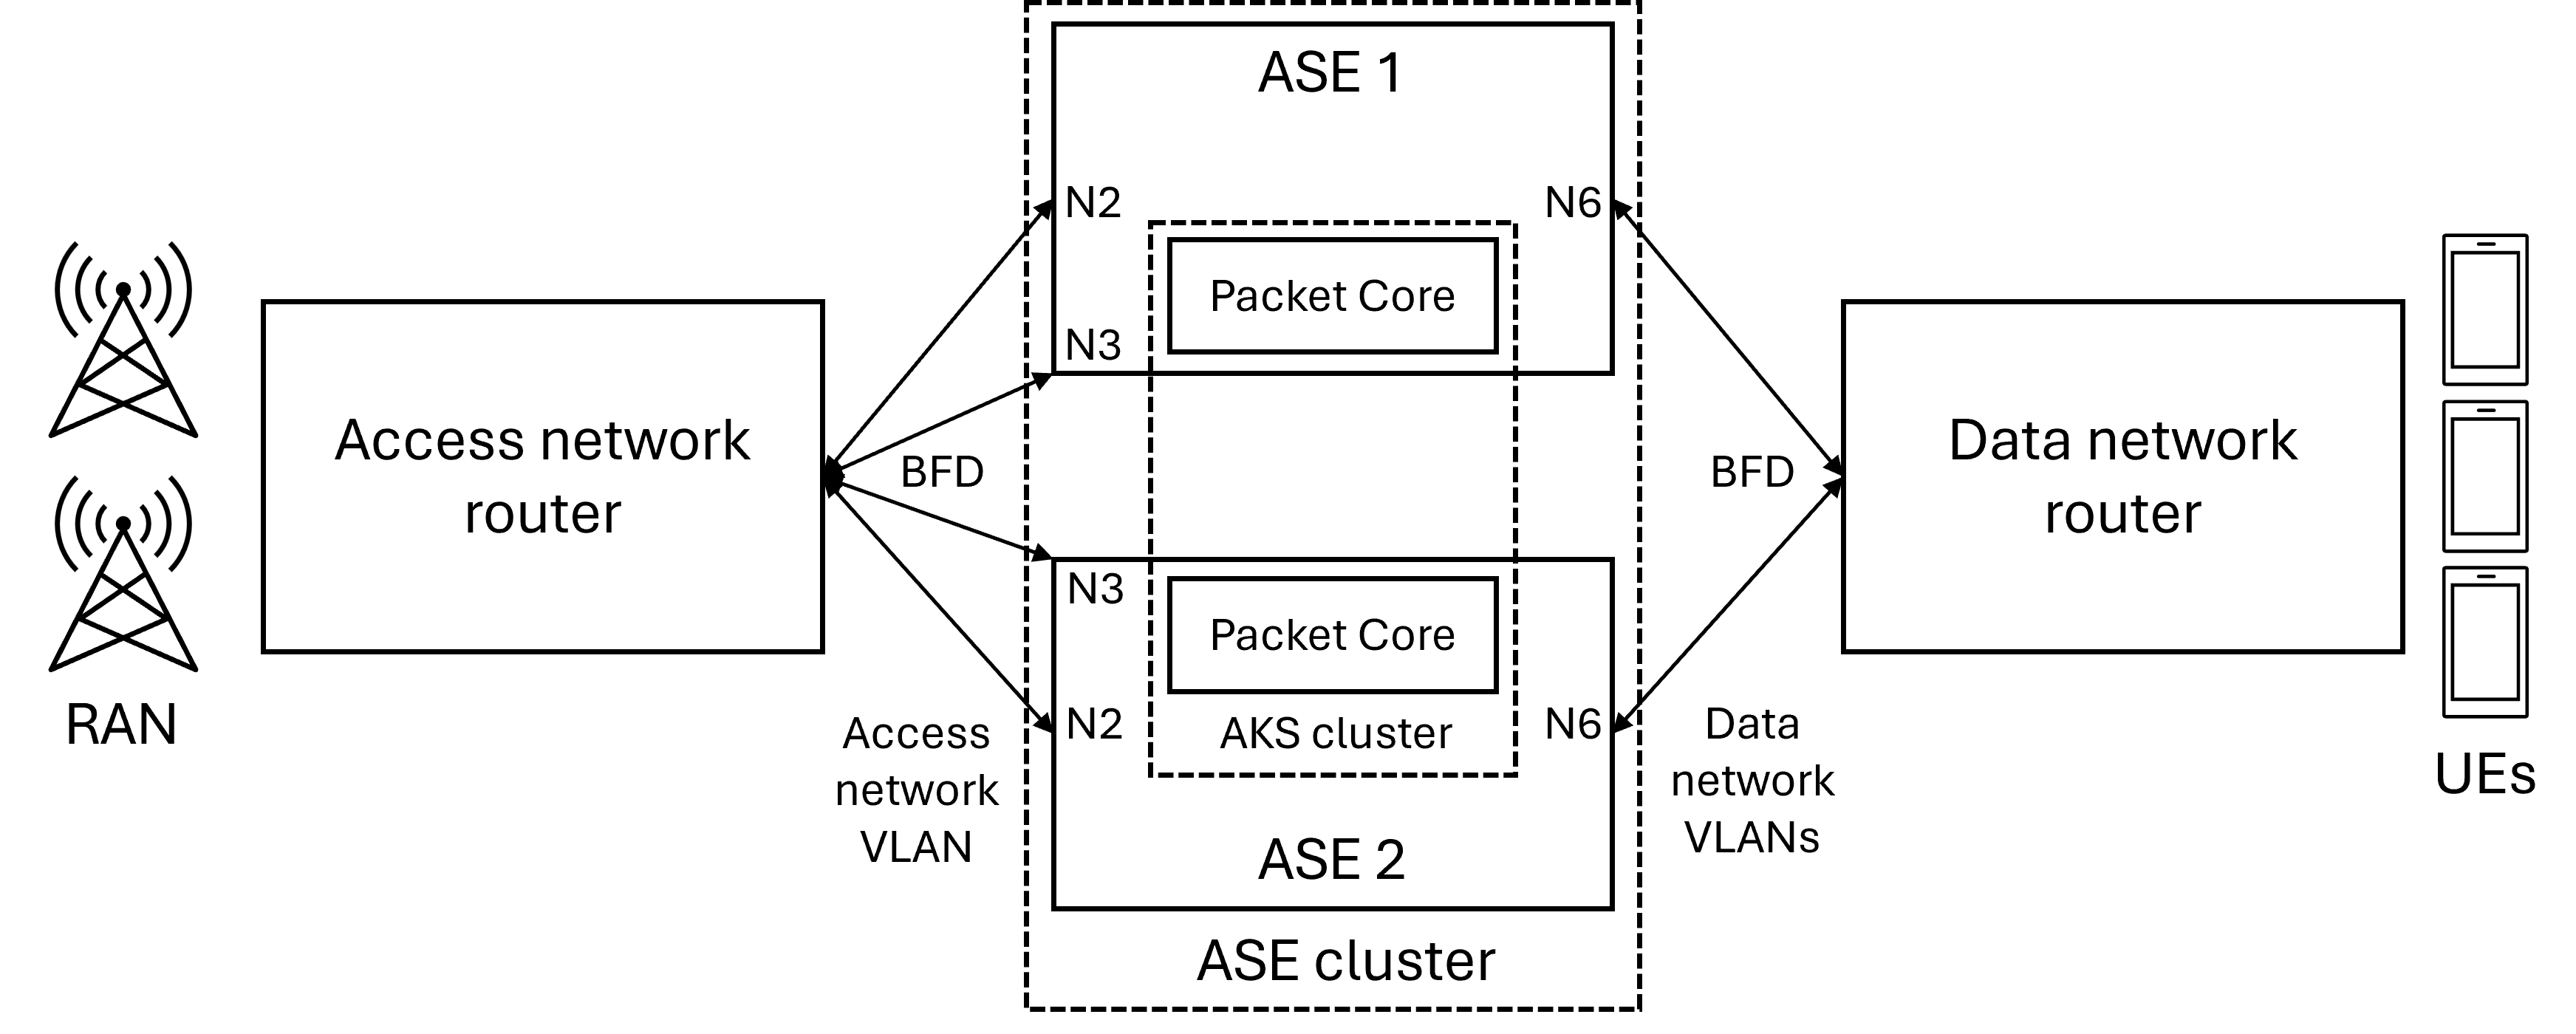 Diagrama mostrando uma implementação altamente disponível com um único roteador de rede de acesso e um único roteador de rede de dados.